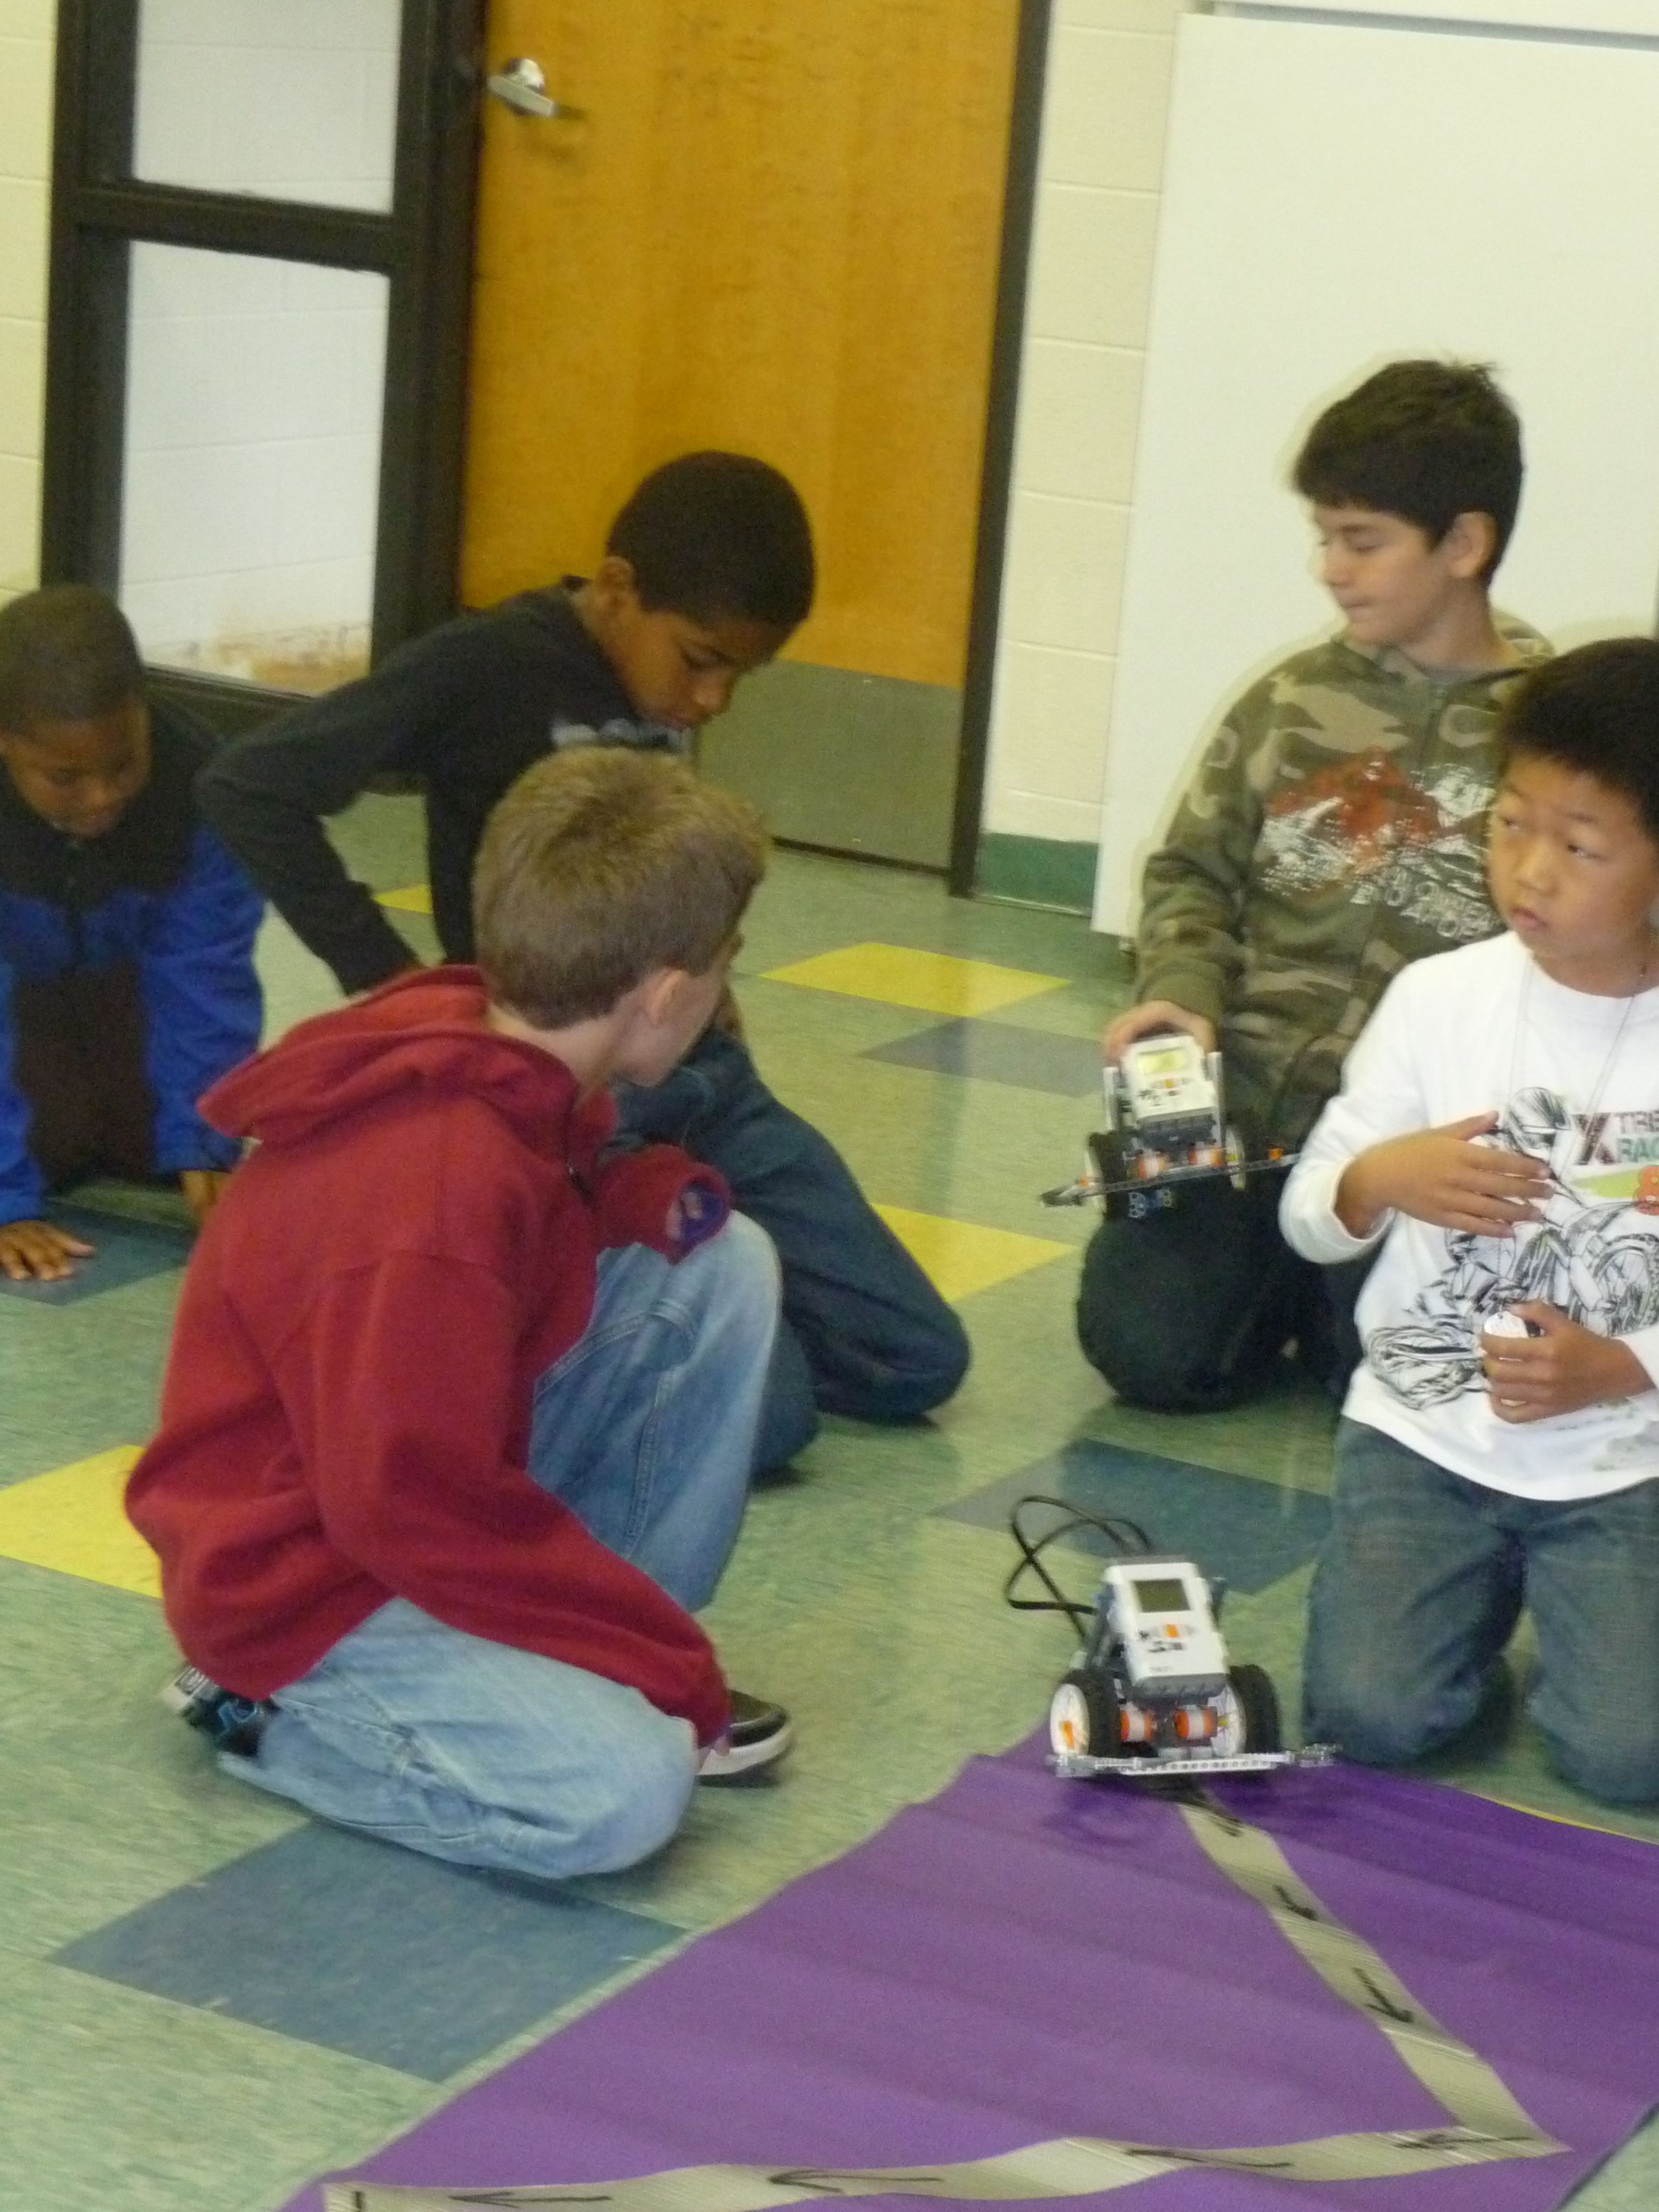 Robotics Class Teaches Problem-Solving